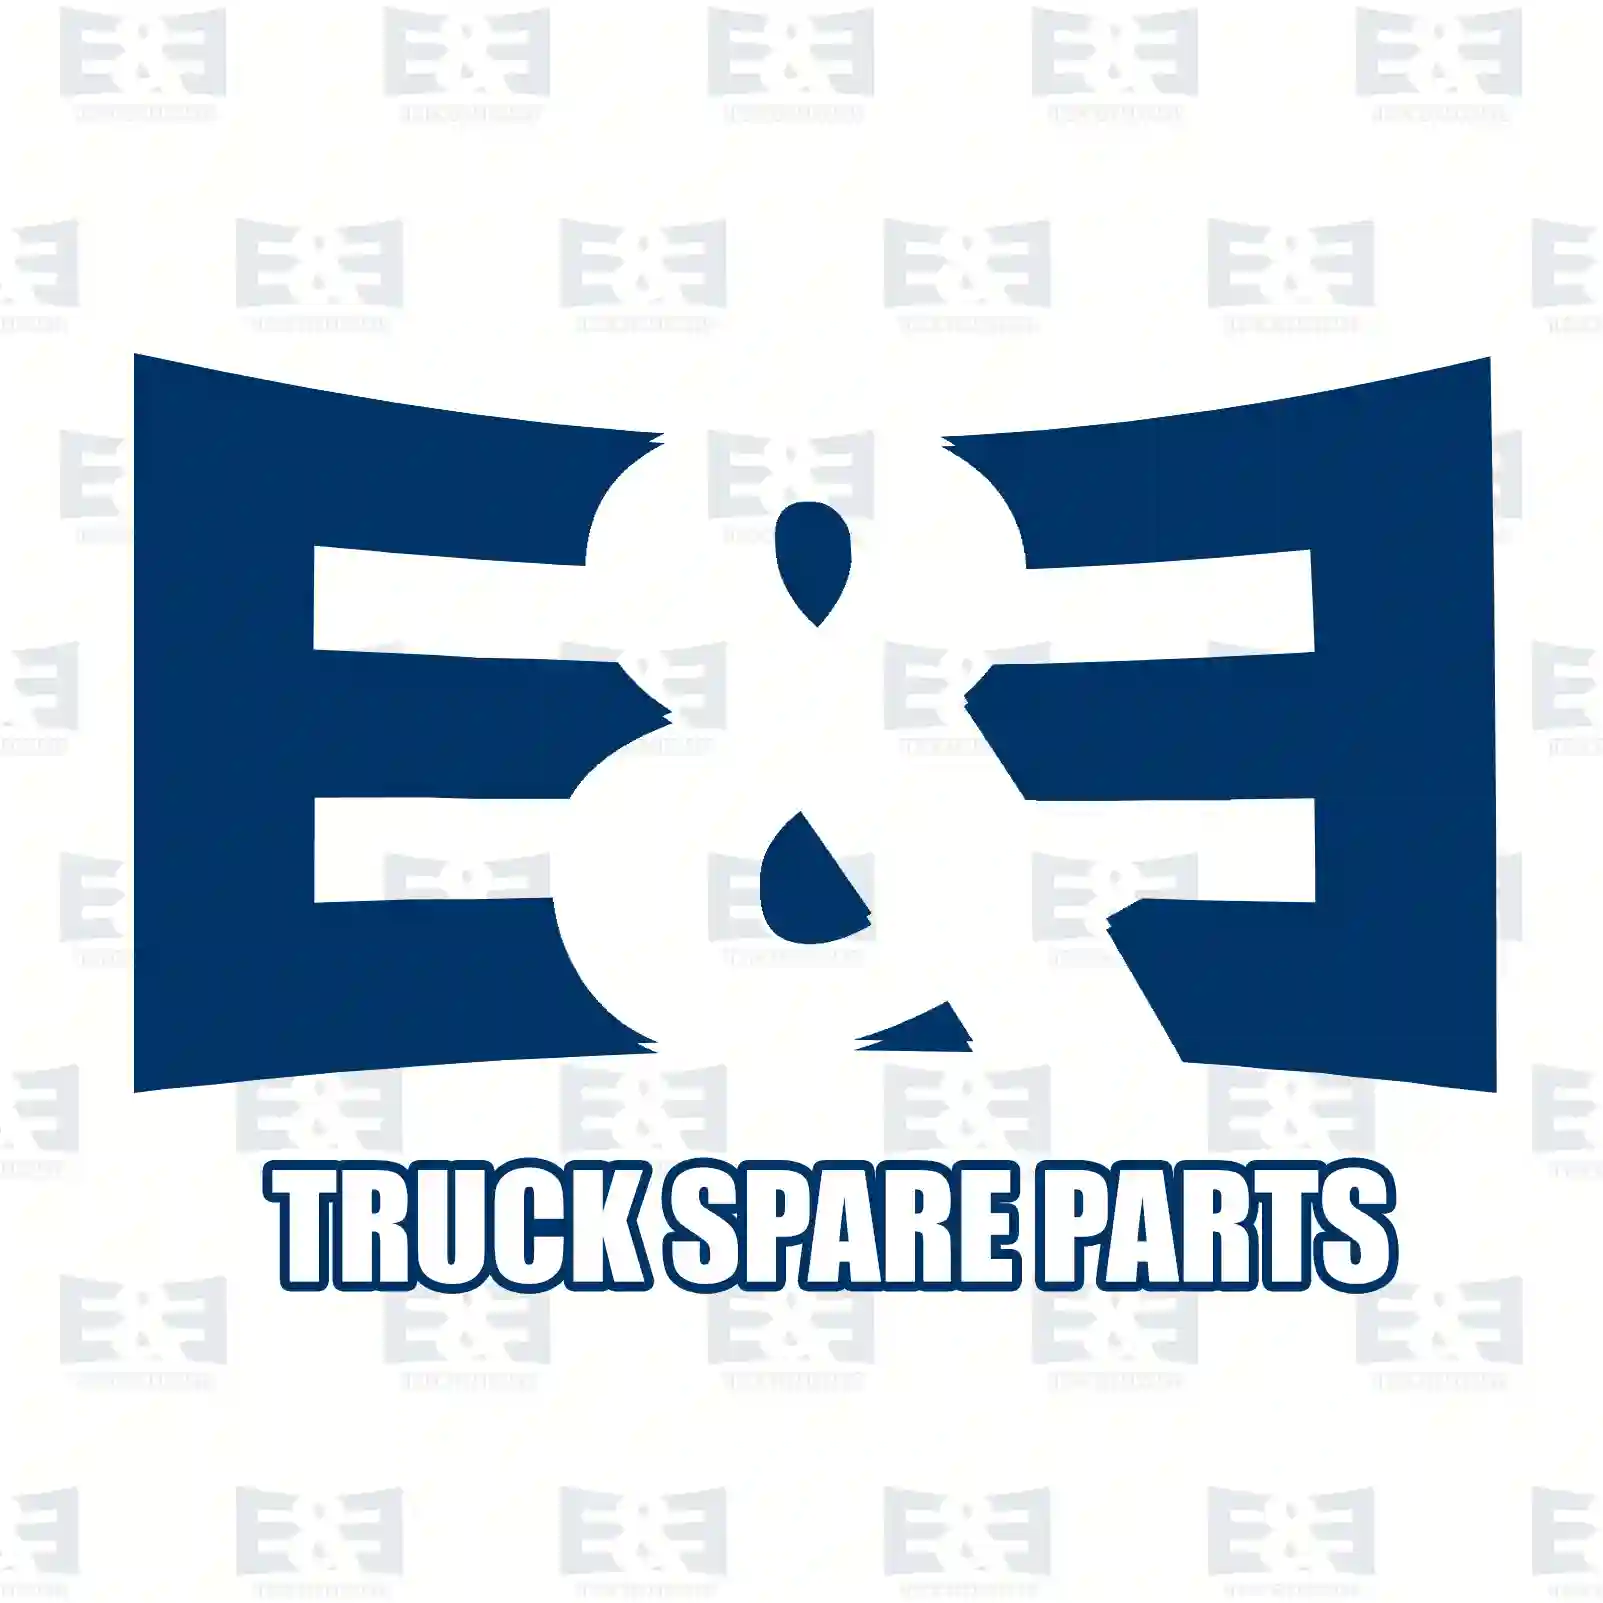 Brake drum, 2E2295767, 3854230801, , , , , , ||  2E2295767 E&E Truck Spare Parts | Truck Spare Parts, Auotomotive Spare Parts Brake drum, 2E2295767, 3854230801, , , , , , ||  2E2295767 E&E Truck Spare Parts | Truck Spare Parts, Auotomotive Spare Parts